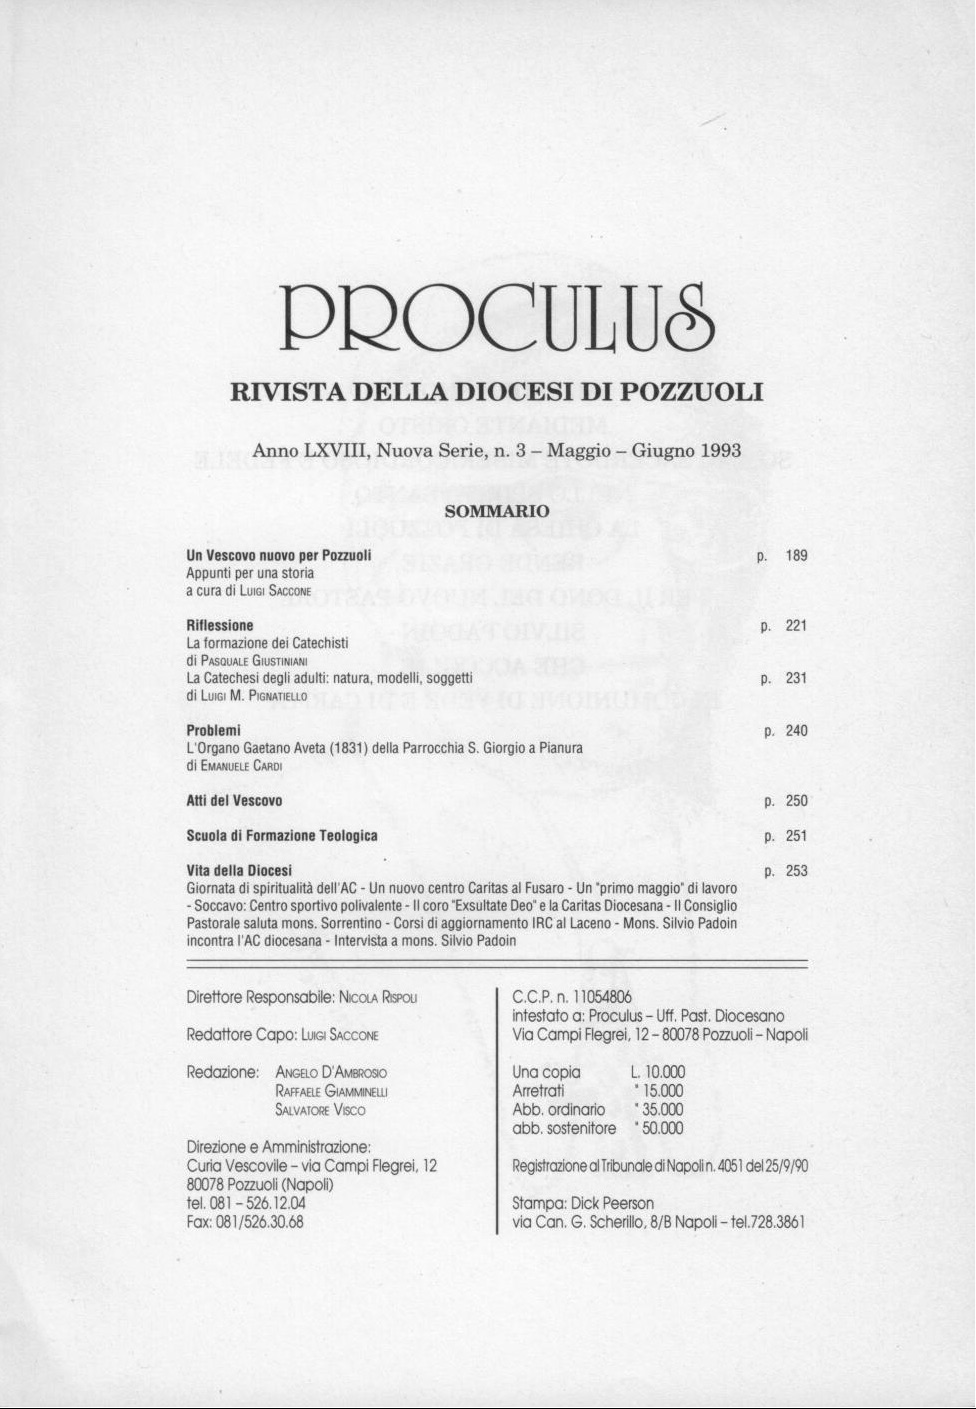 L'organo Gaetano Aveta 1831 della Parrocchia S: Giorgio a Pianura / Proculus anno LXVIII n. 3 1993